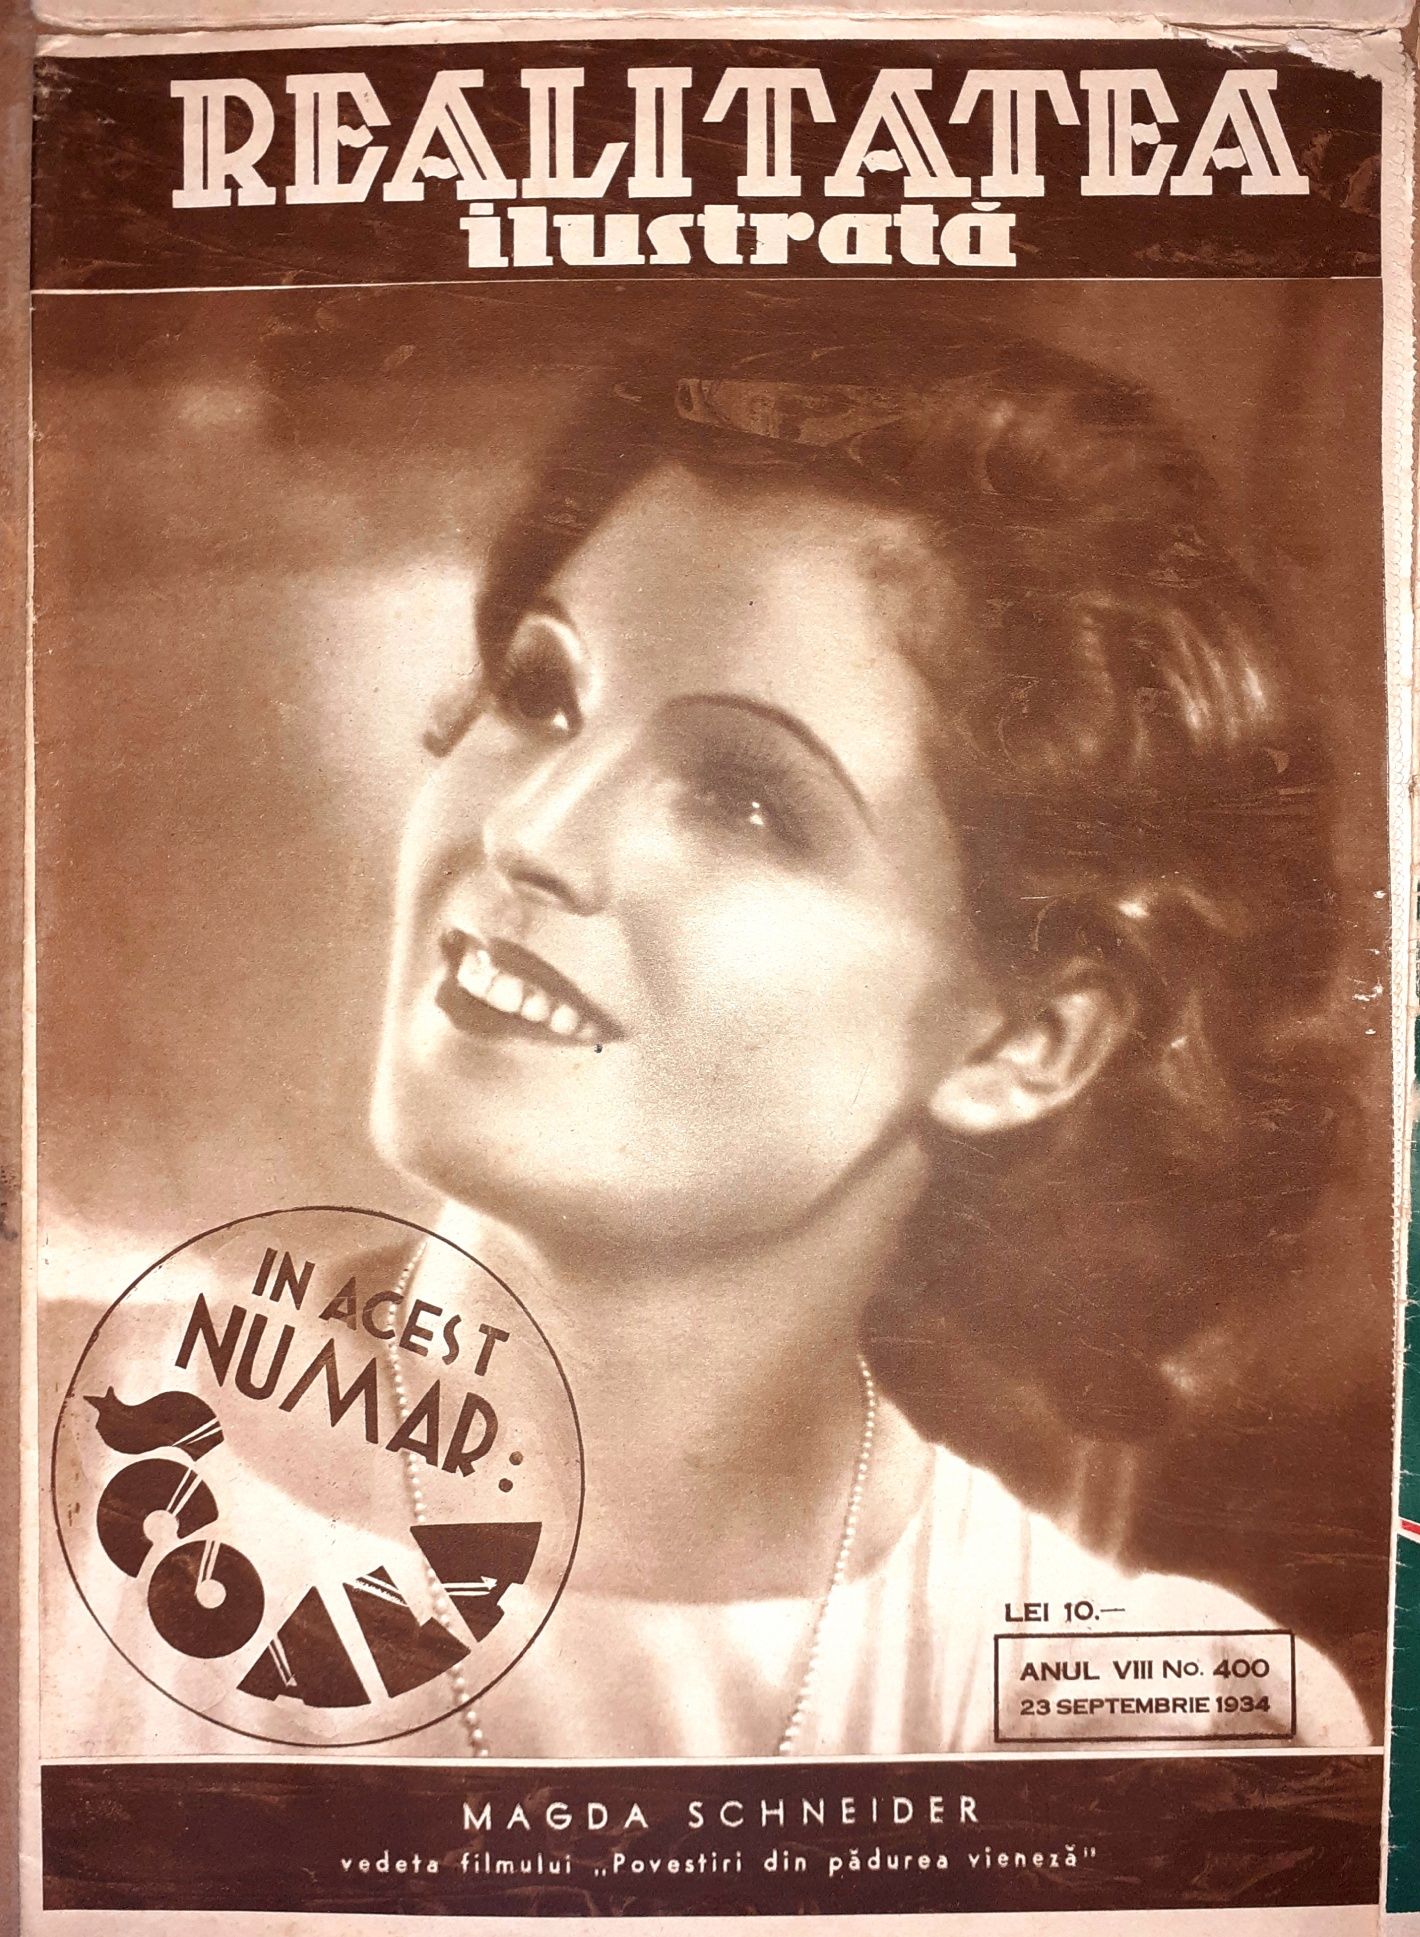 Reviste *Realitatea ilustrată* 1931-1934